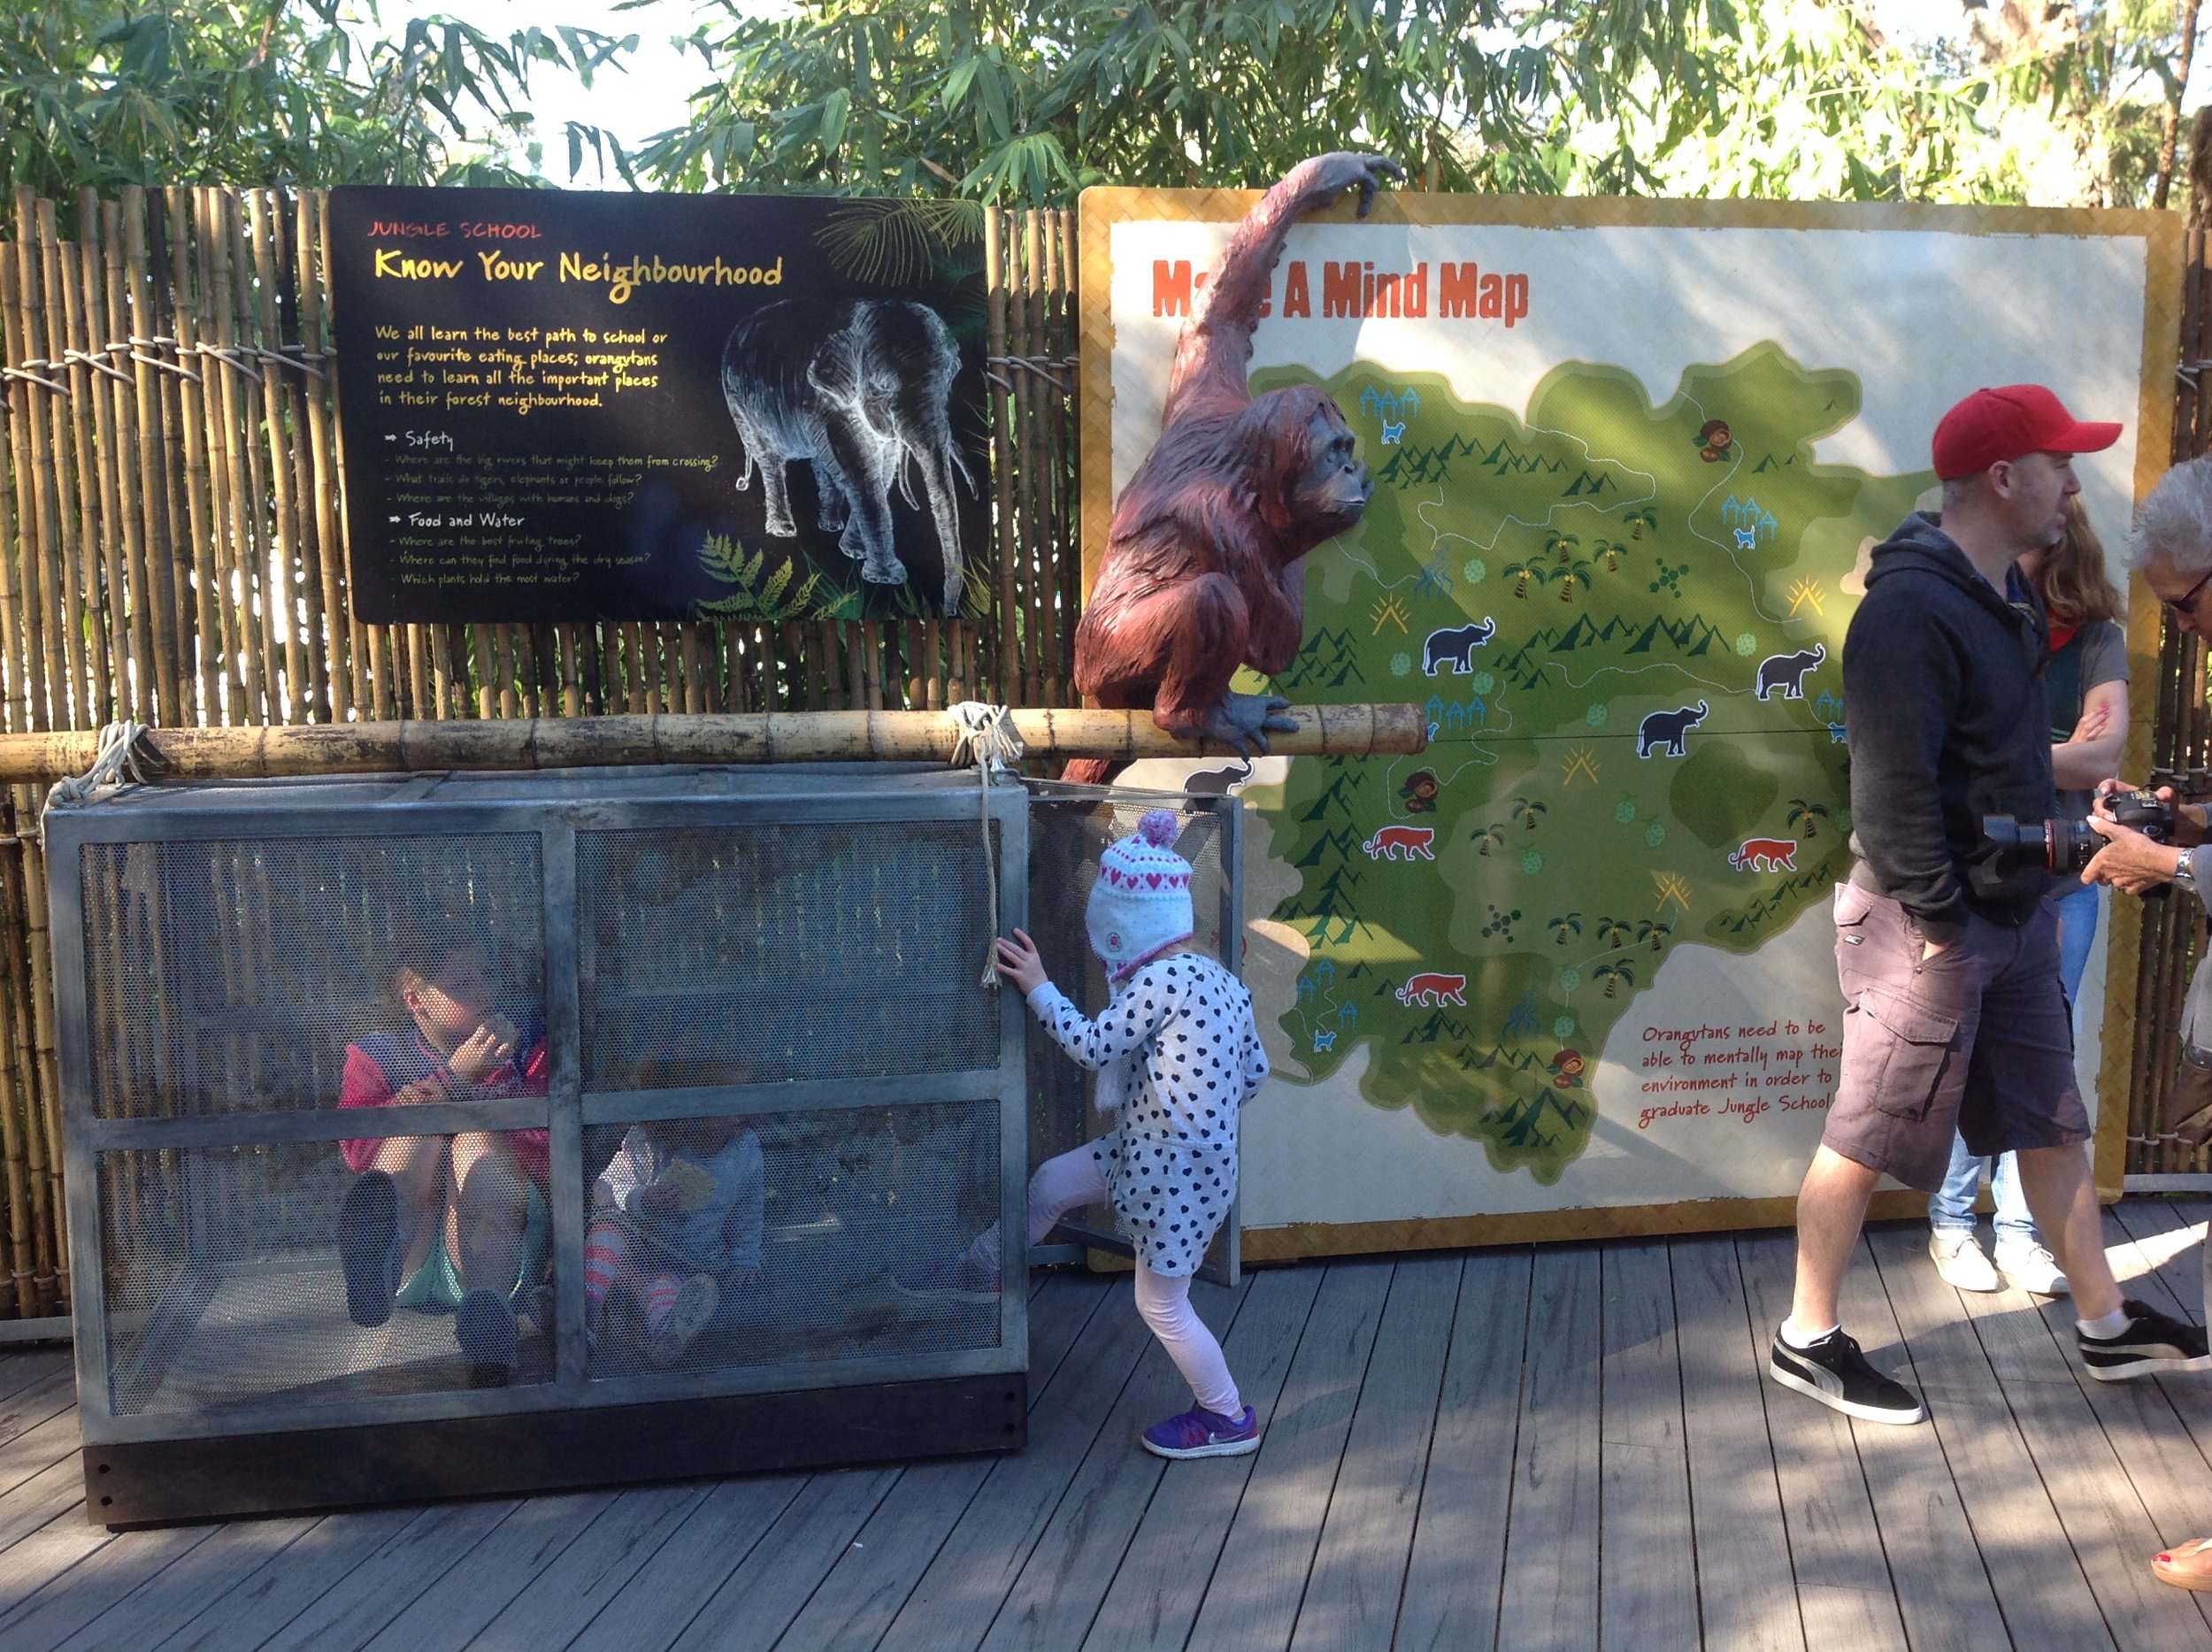 release crate and Orangutan sculpture Perth Zoo 2014.JPG